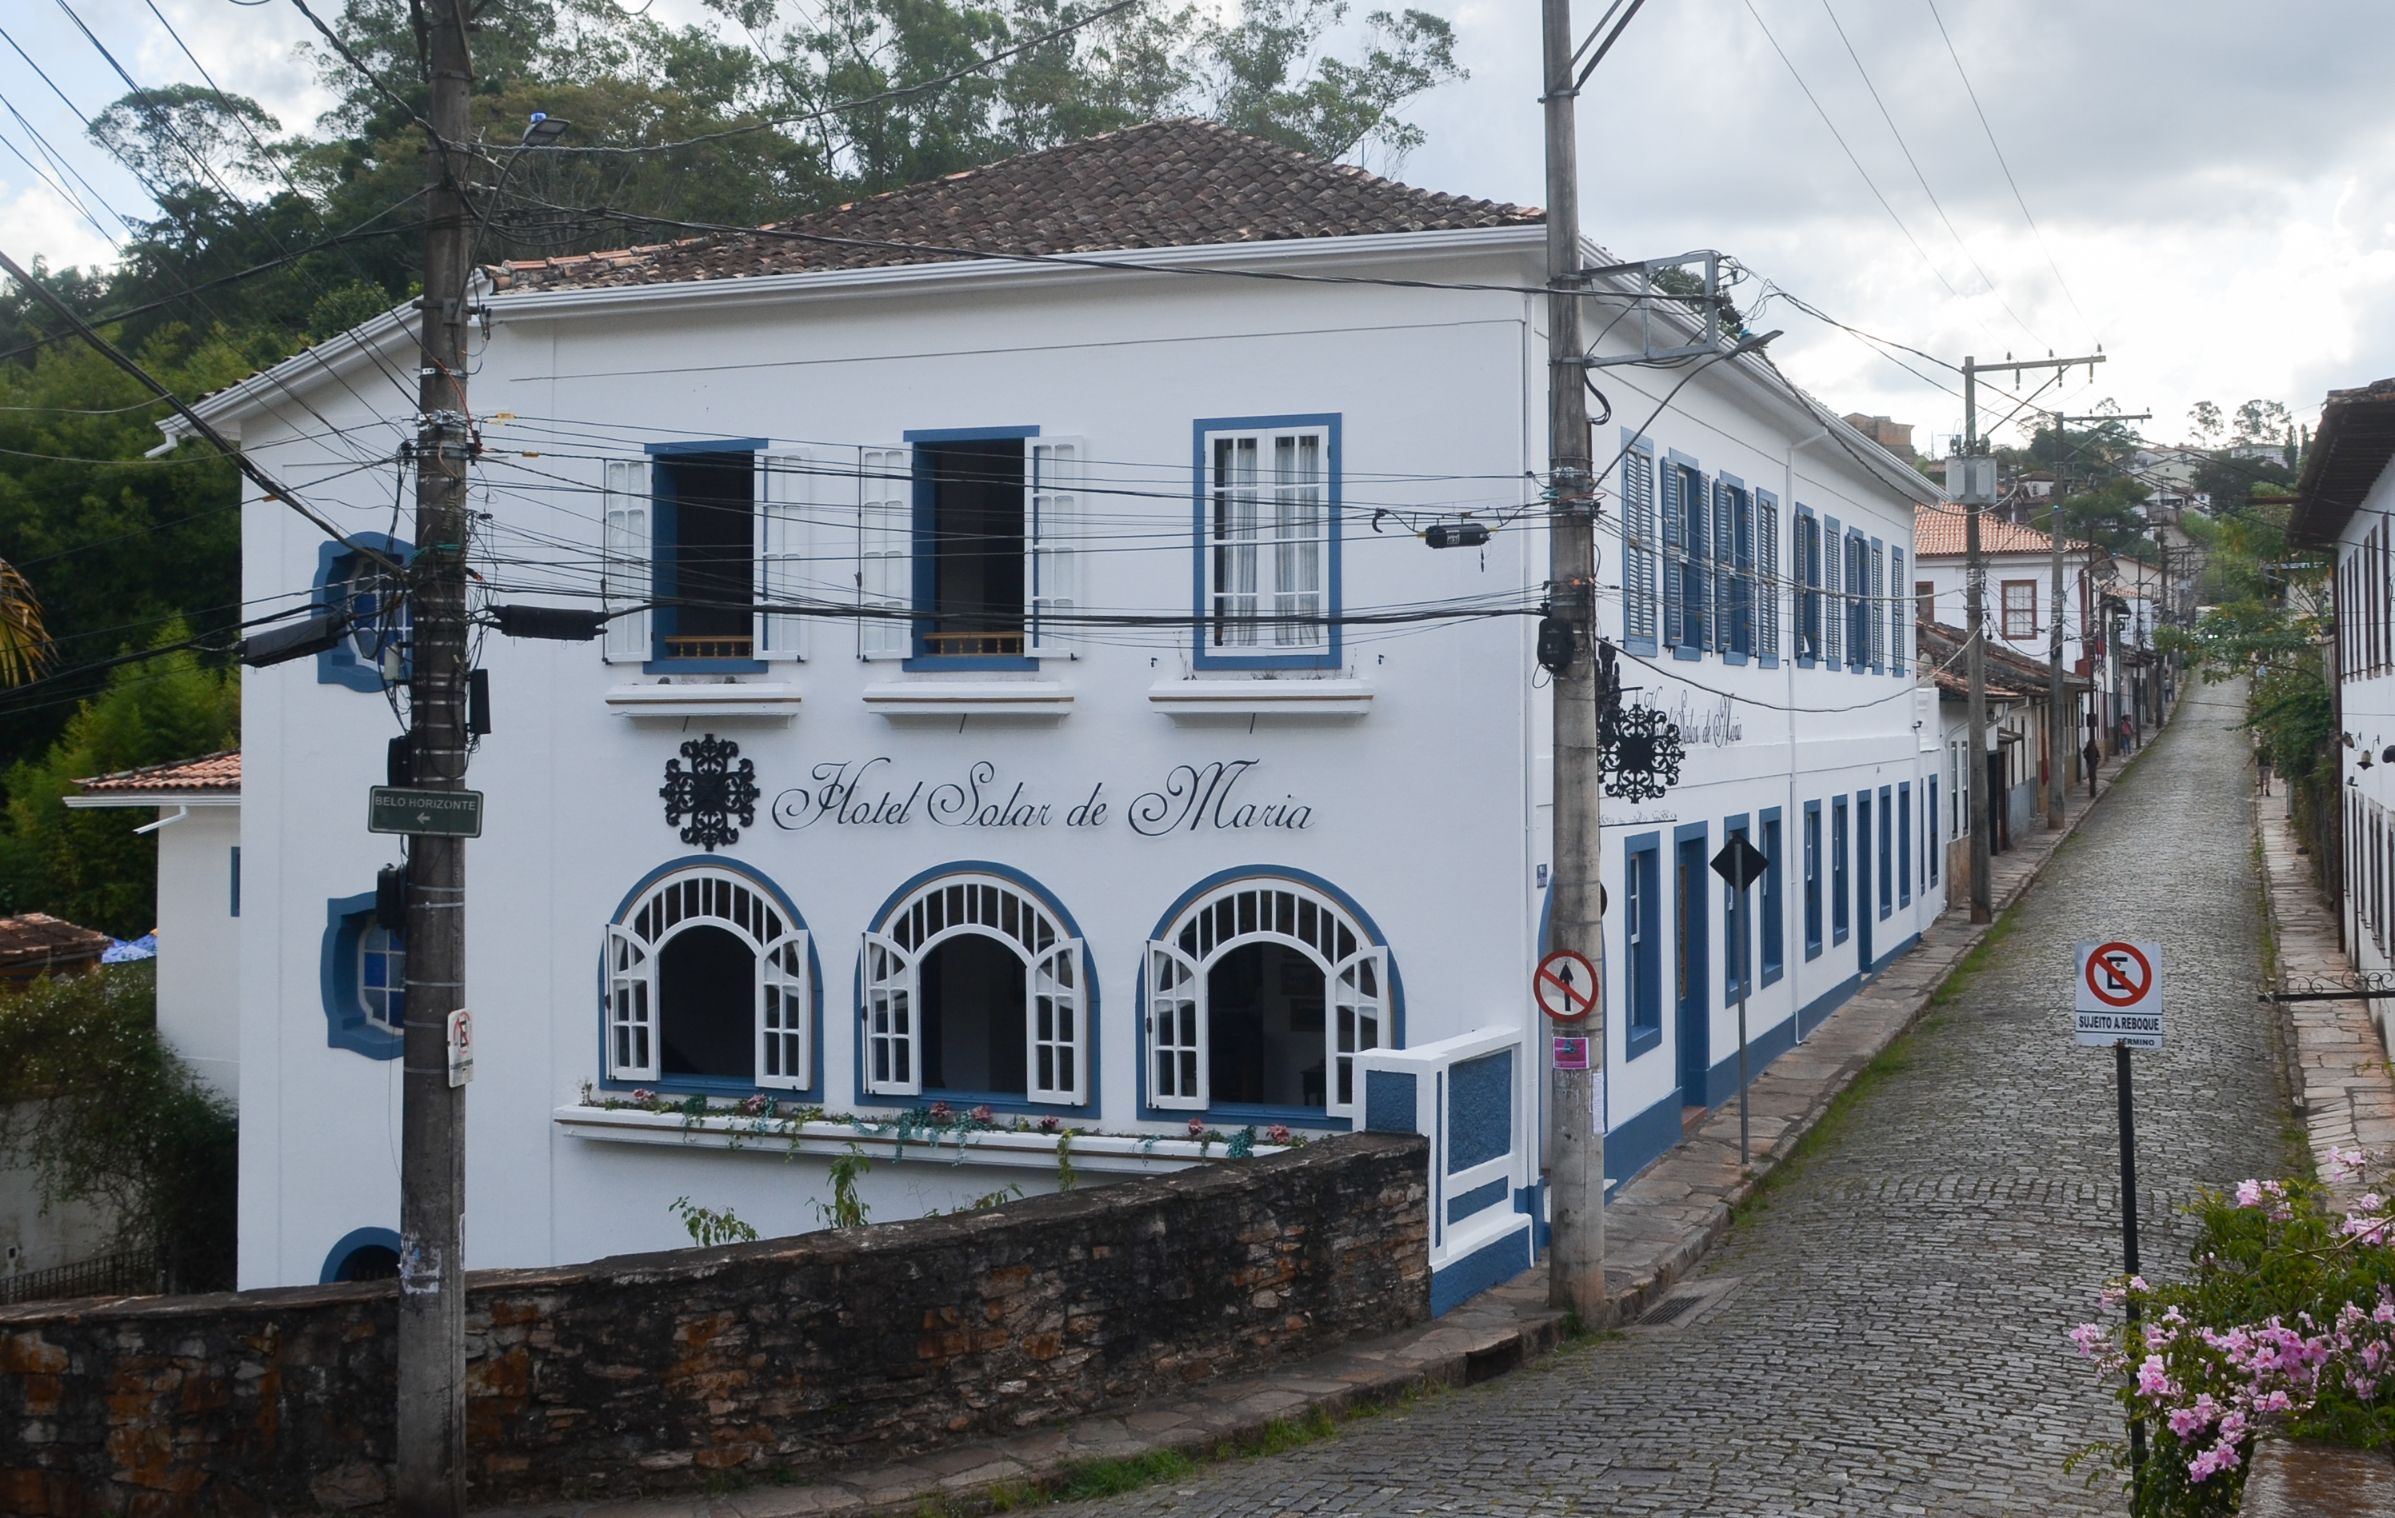 Onde se hospedar em Ouro Preto: hotéis e pousadas Hotel Solar de Maria - Ouro Preto | Conexão123